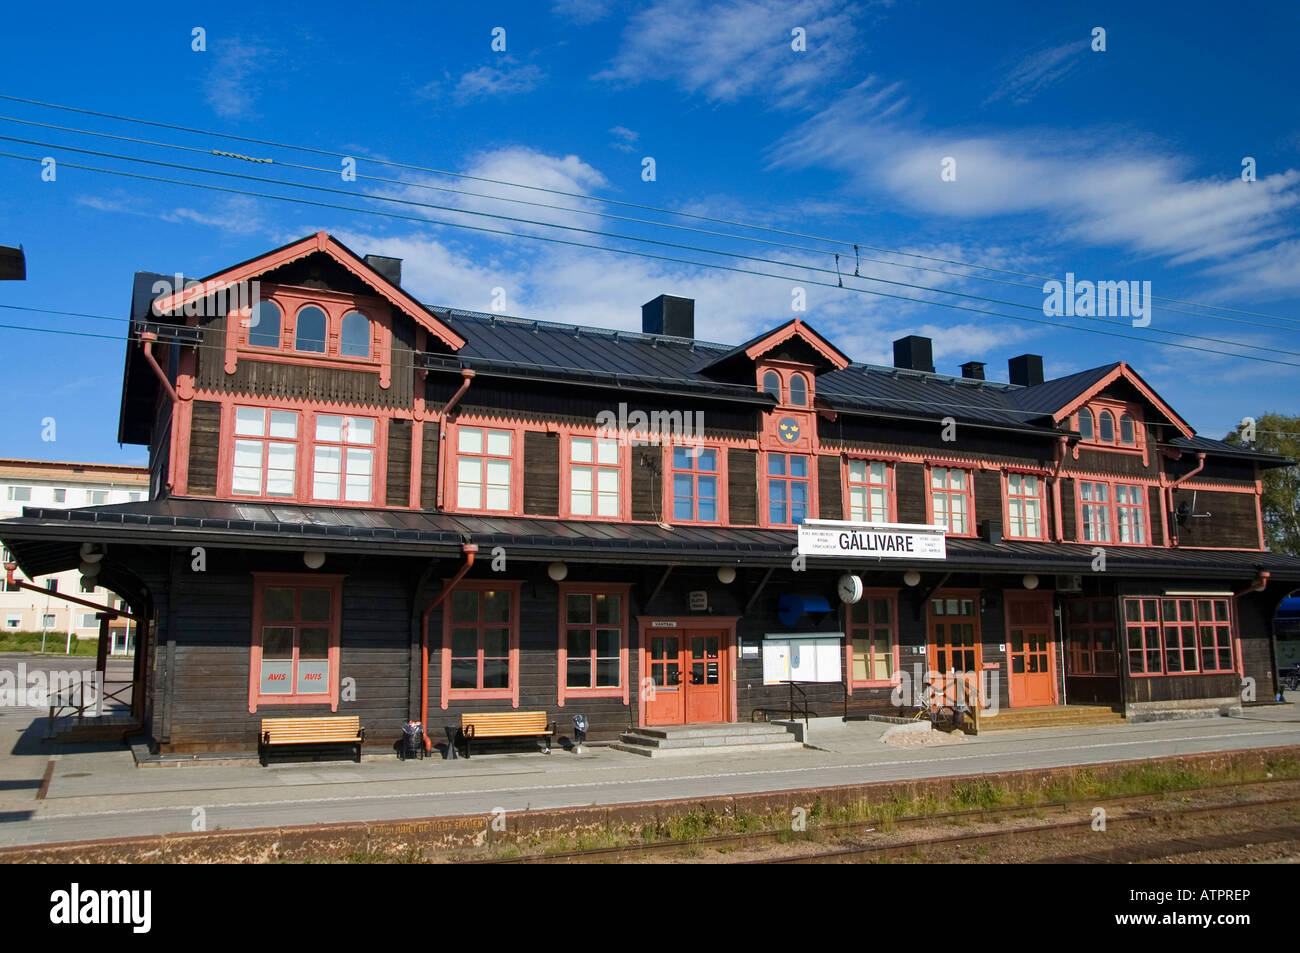 Railway station / Gallivare Stock Photo